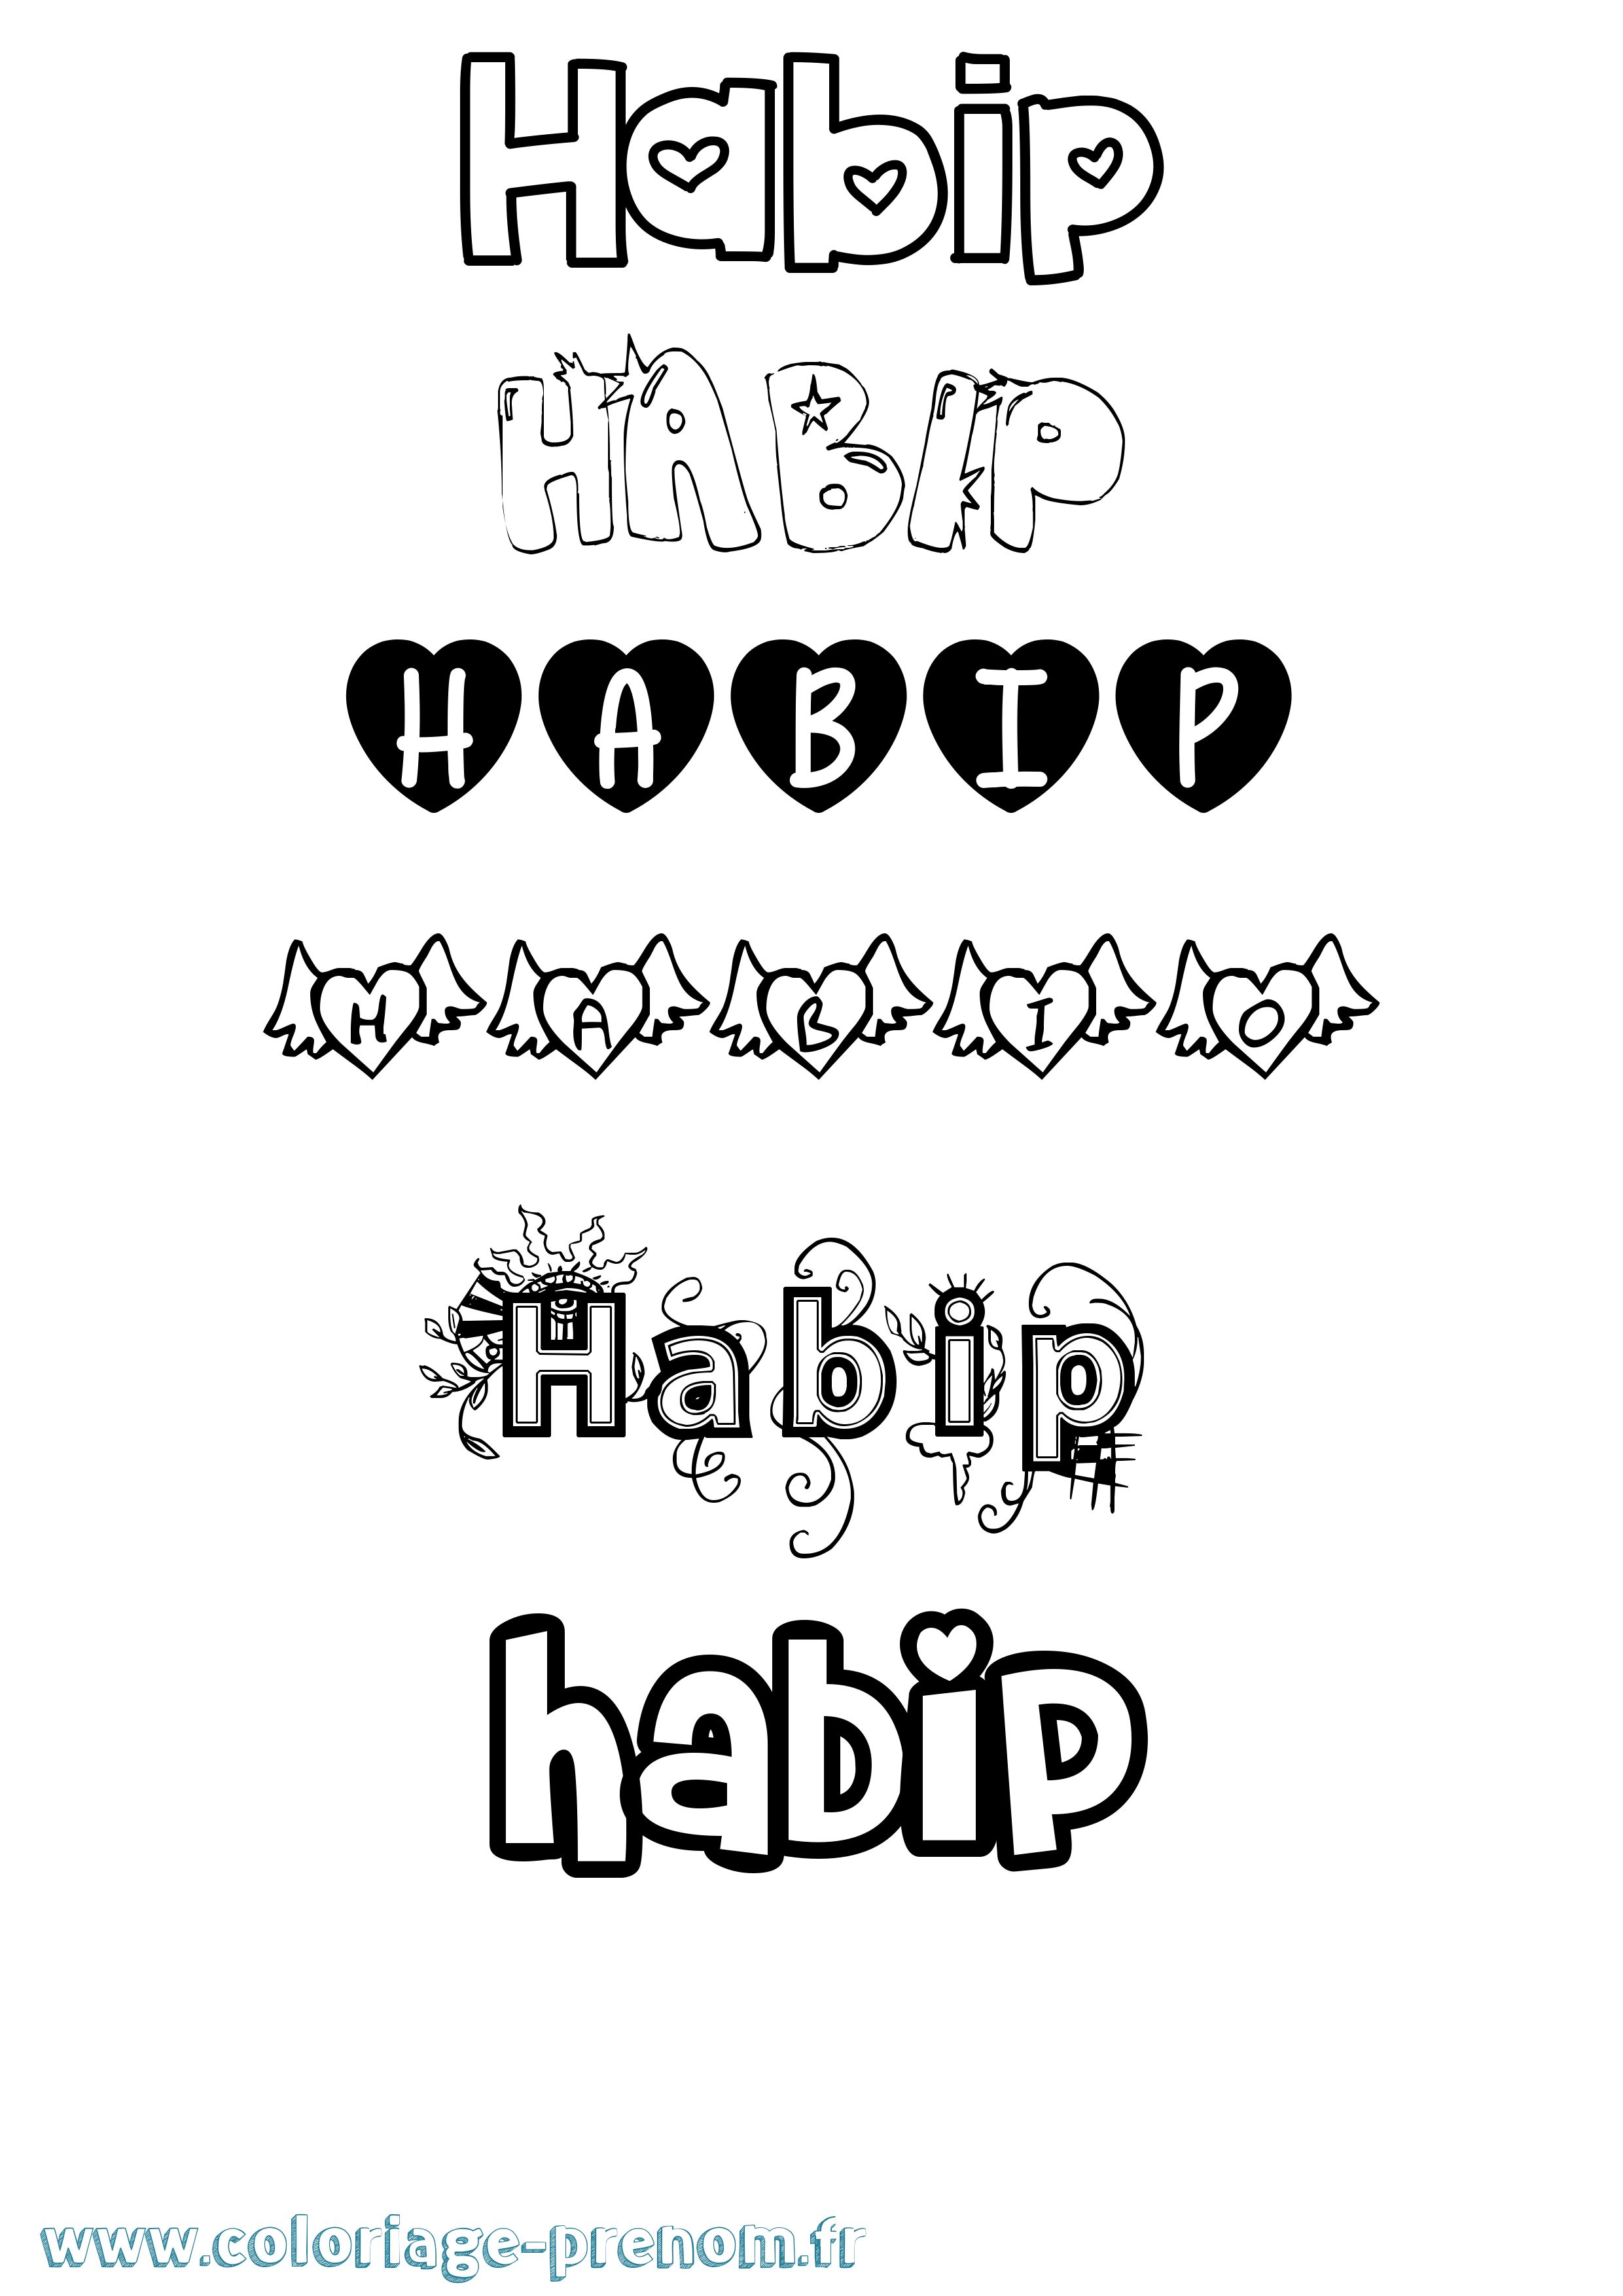 Coloriage prénom Habip Girly